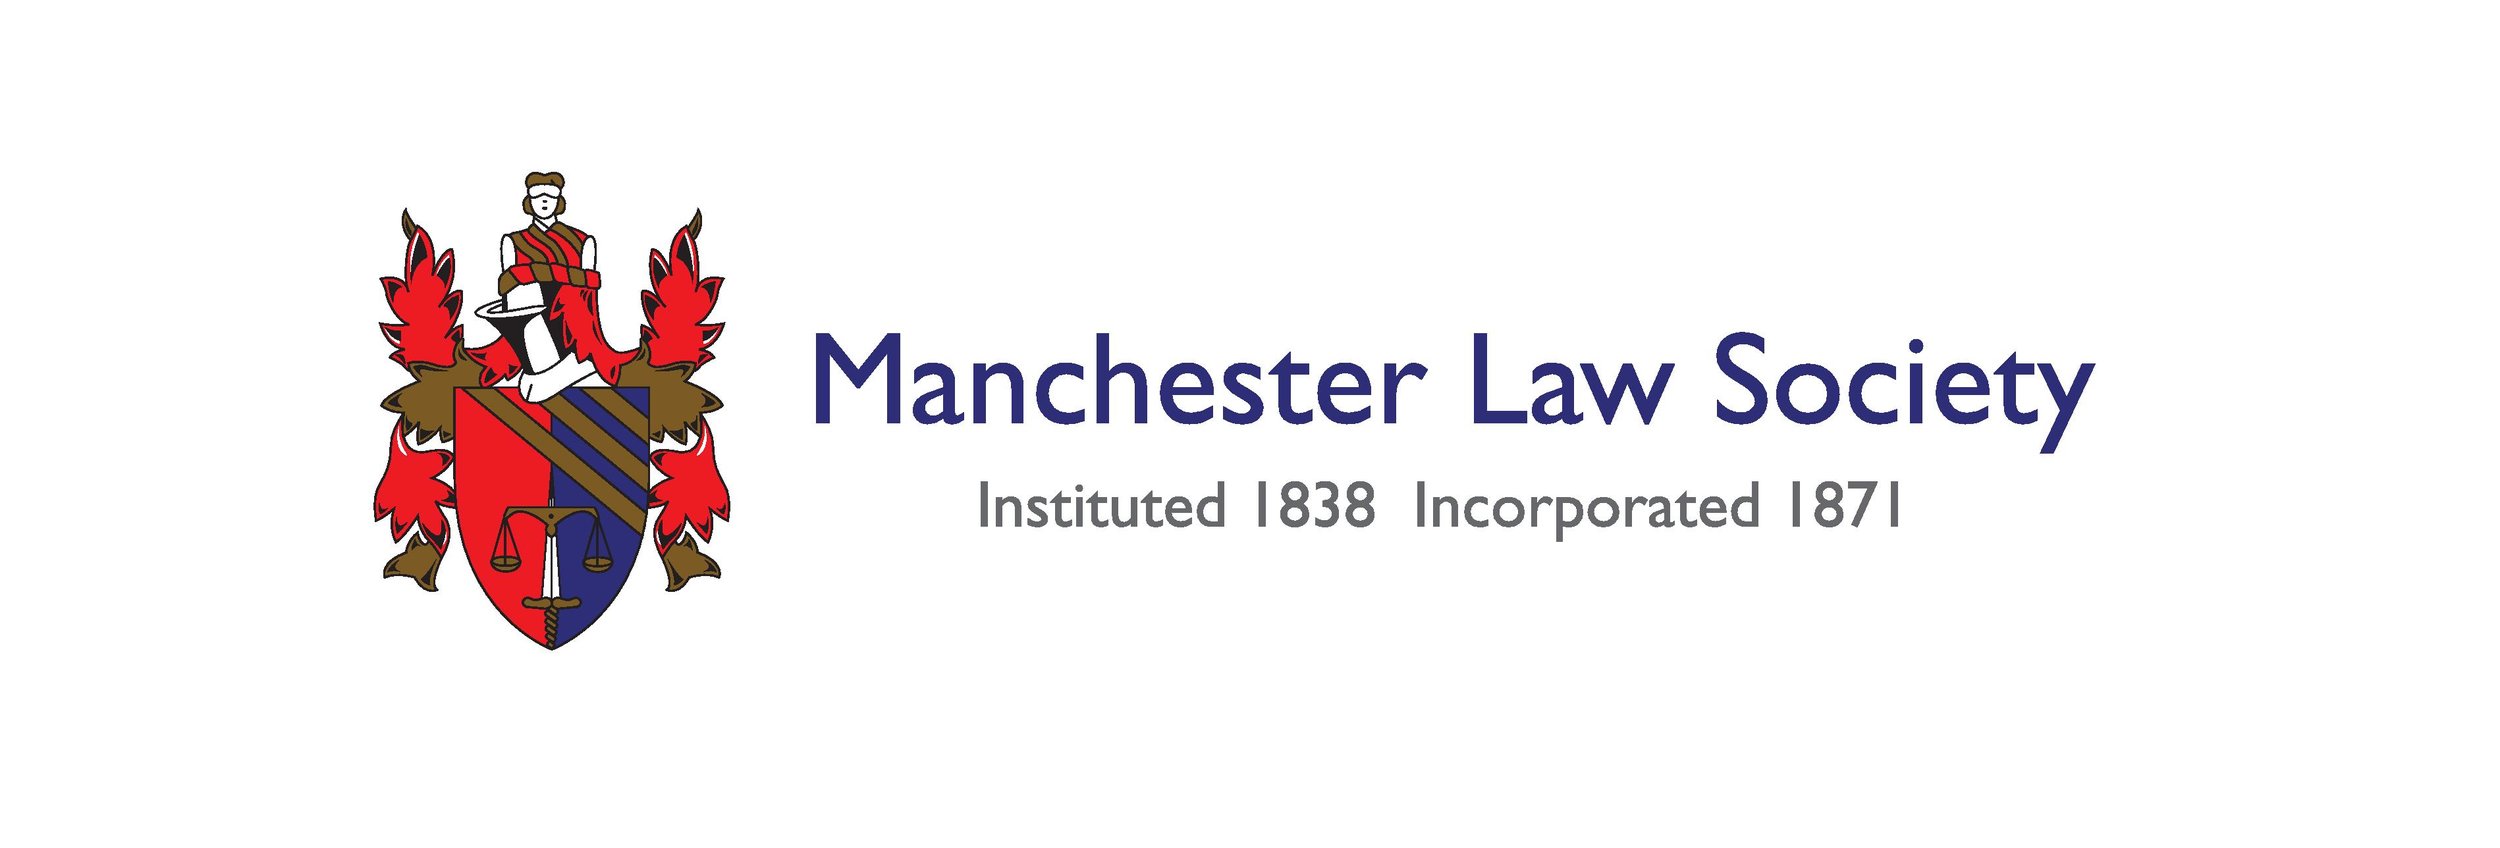 Manchester Law Society.jpg